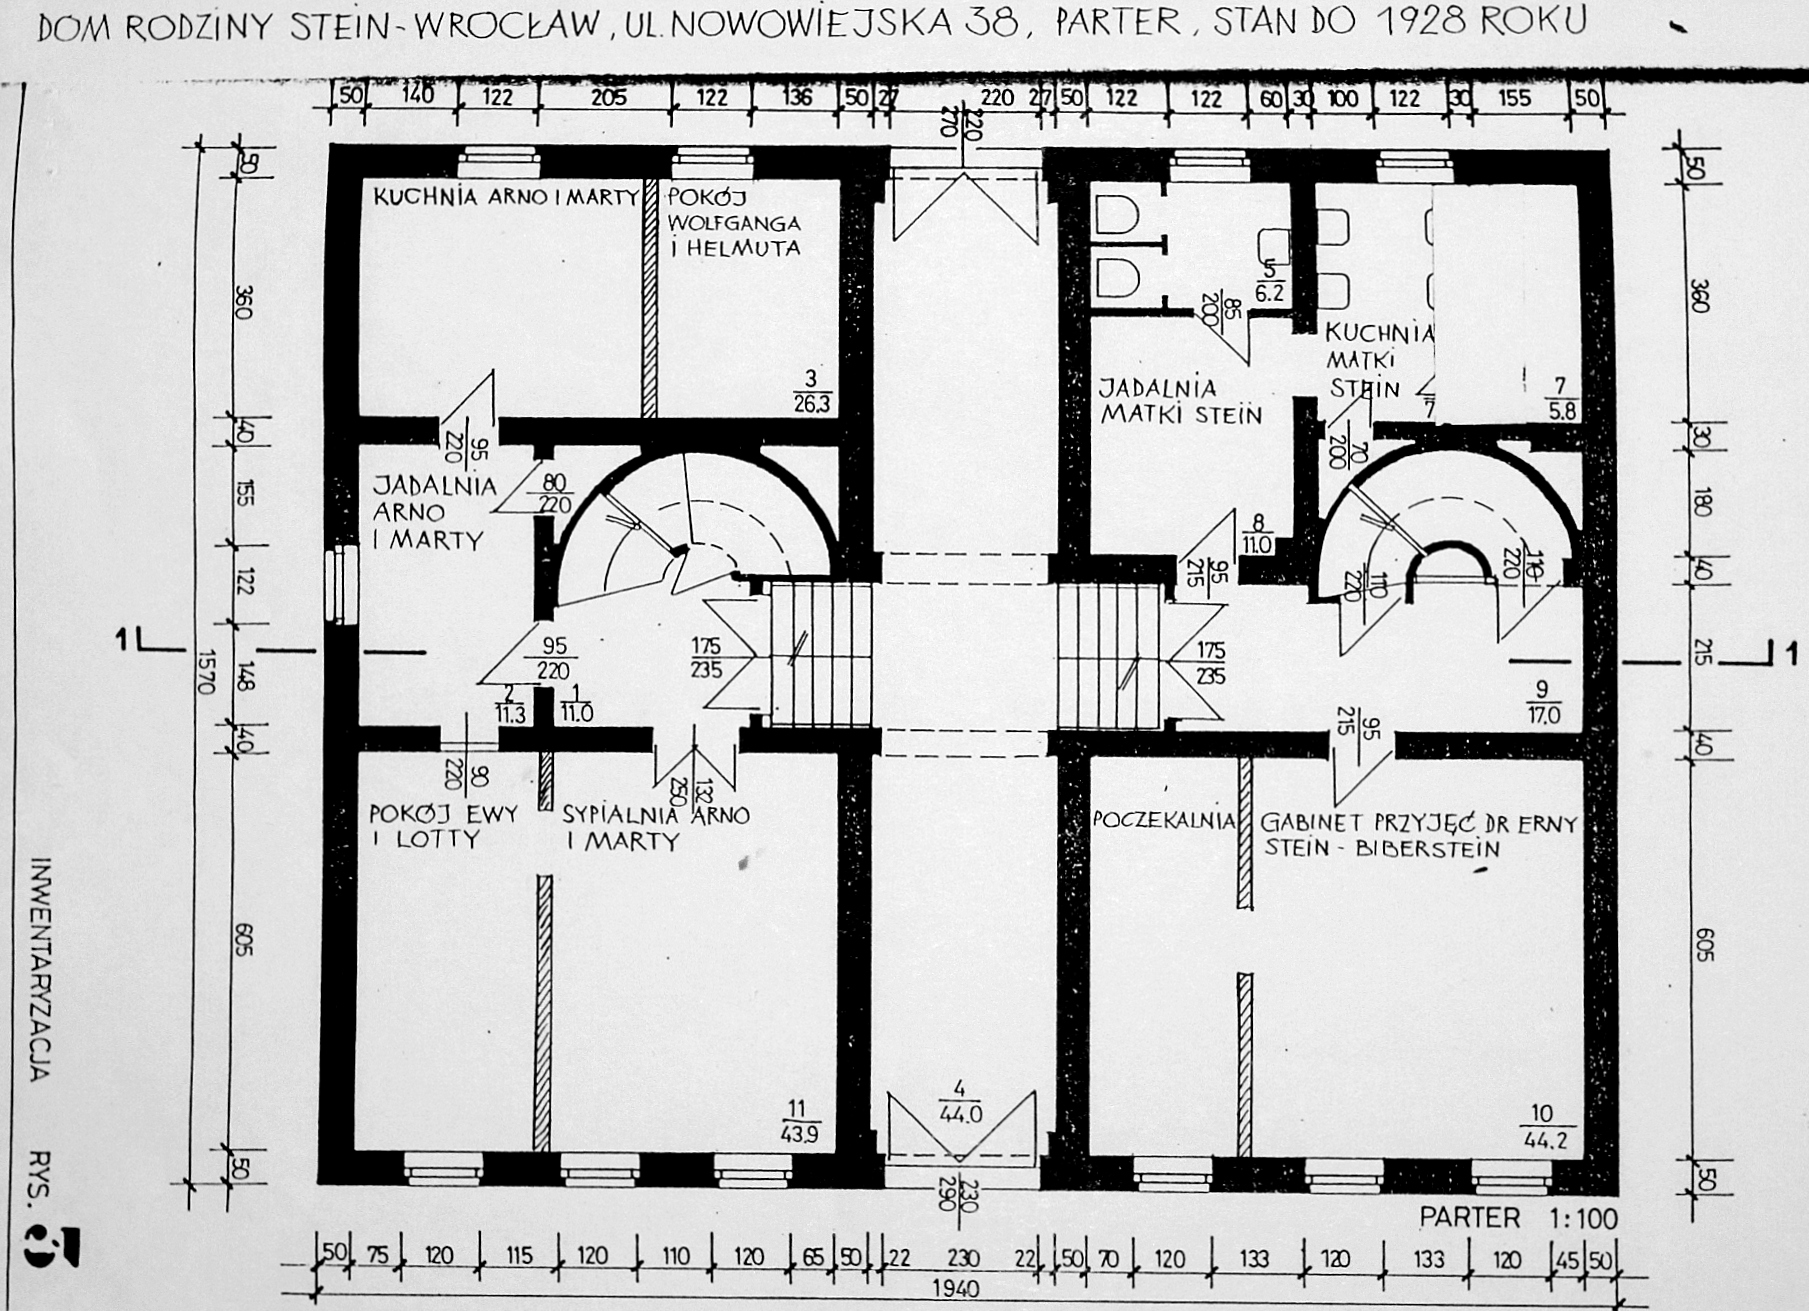 Plan domu Steinów przy Michaelisstrasse 38 we Wrocławiu przed 1928 rokiem, parter, archiwum Towarzystwa im. Edyty Stein we Wrocławiu. 